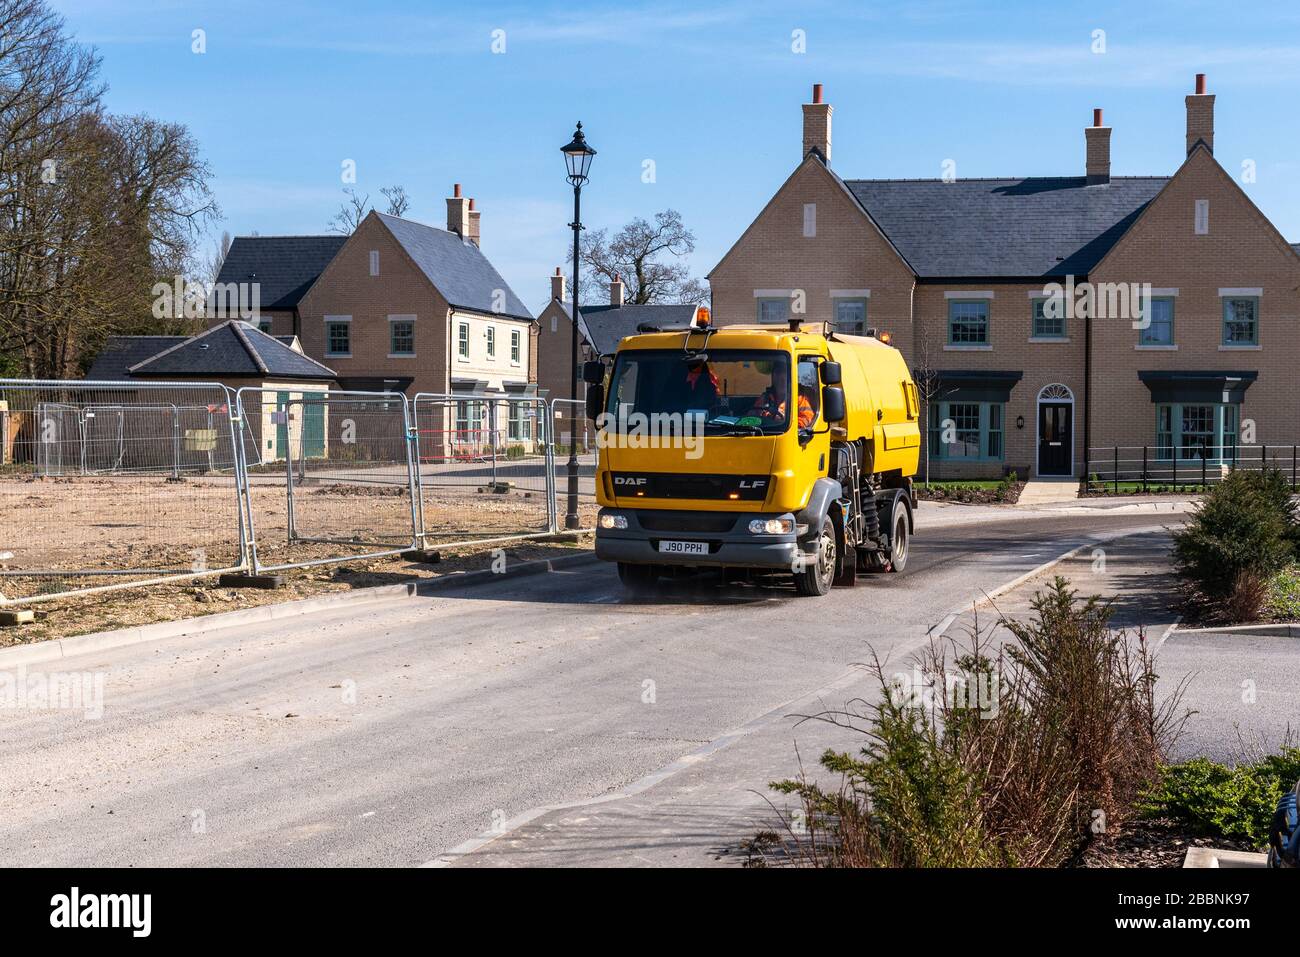 Bauarbeiter bauen während der Sperrung des Covid-19 UK an der neuen Wohnentwicklung, die am ehemaligen Standort Brampton, Brampton Park, errichtet wird, weiter Häuser. Brampton, Cambridgeshire, Großbritannien. Stockfoto